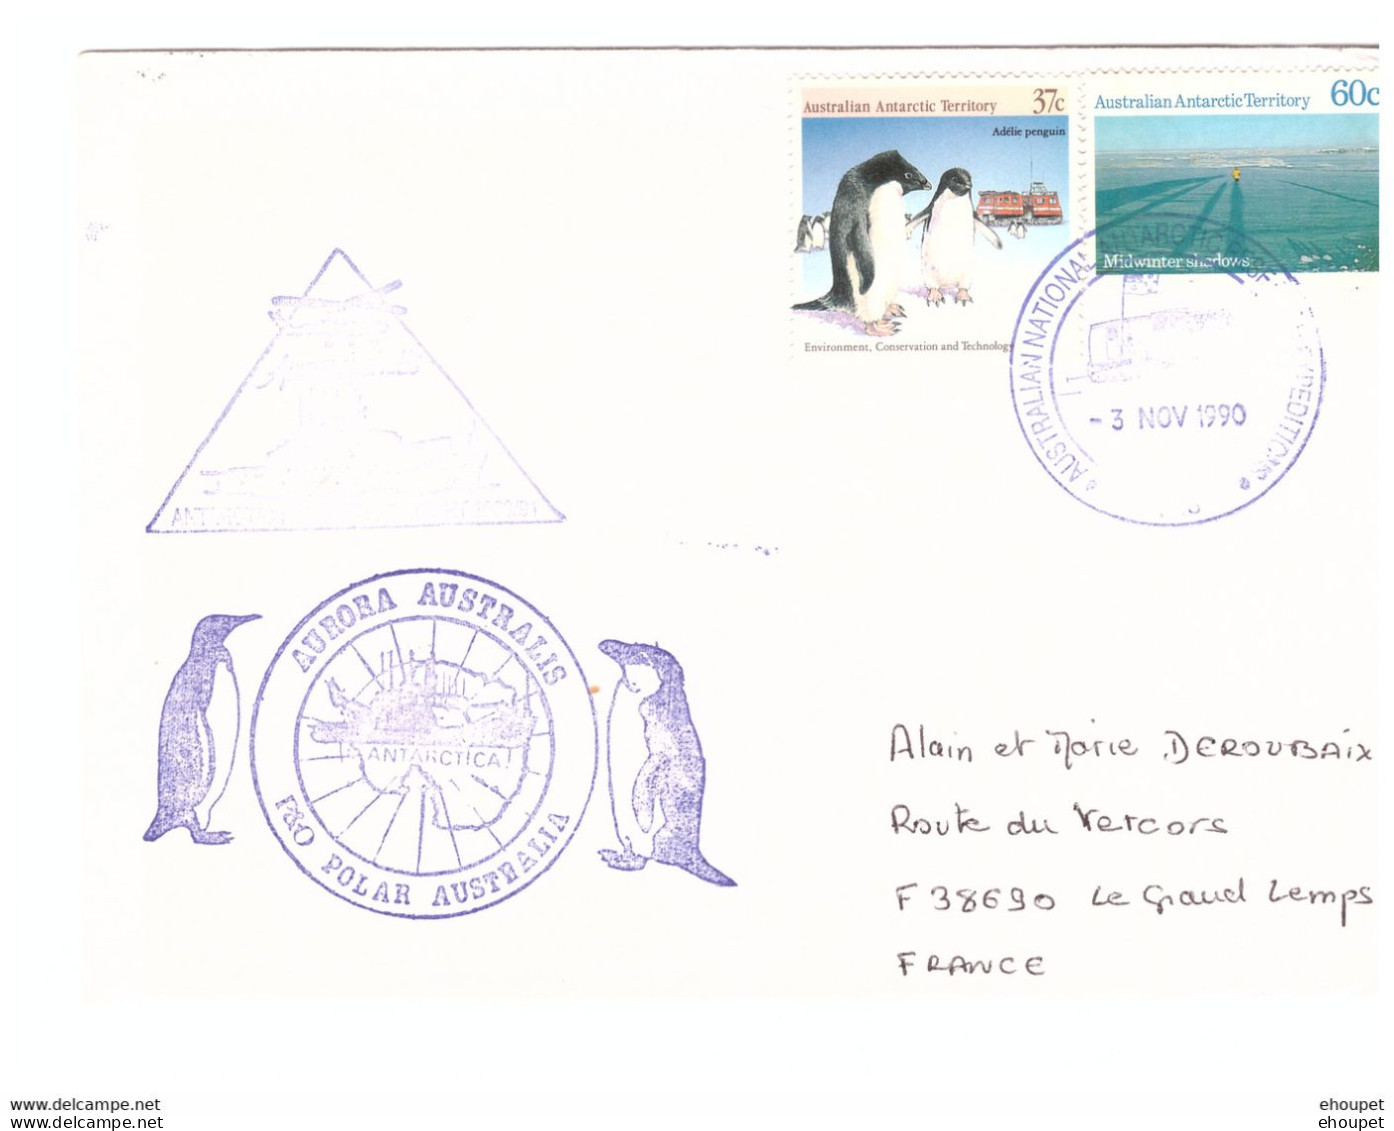 3 NOVEMBRE 1990 AURORA AUSTRALIS - Briefe U. Dokumente